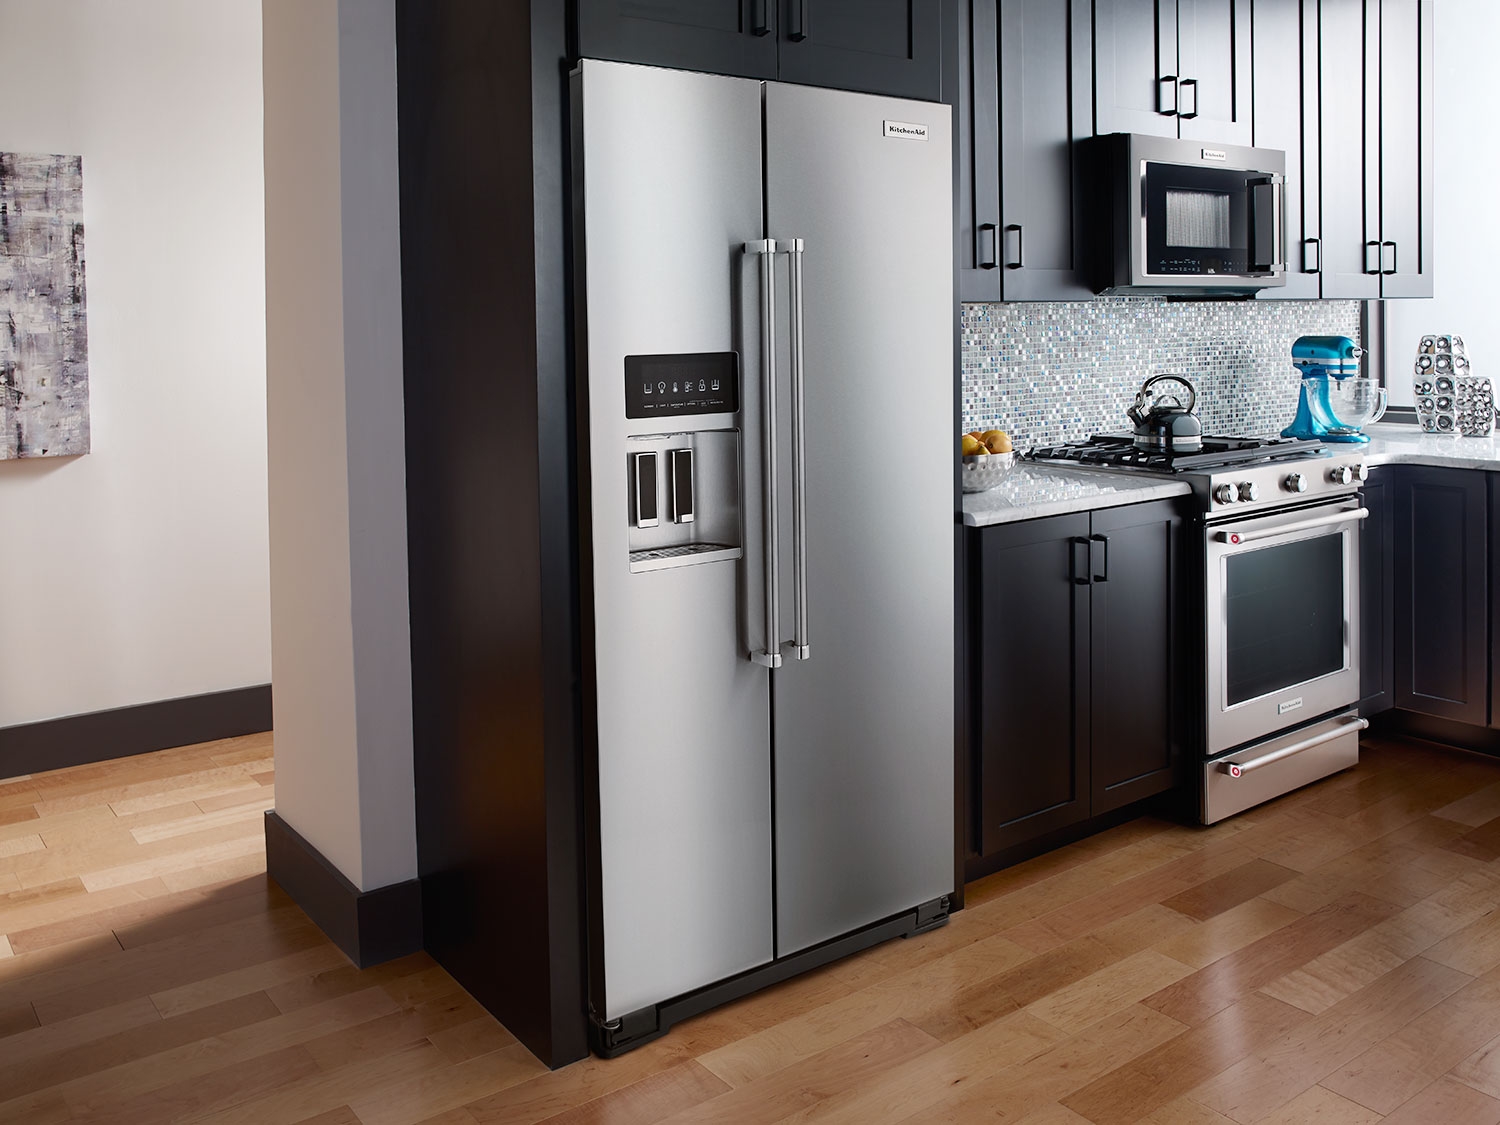 Kinh nghiệm chọn mua chiếc tủ lạnh cao cấp tốt nhất dành cho gia đình bạn.